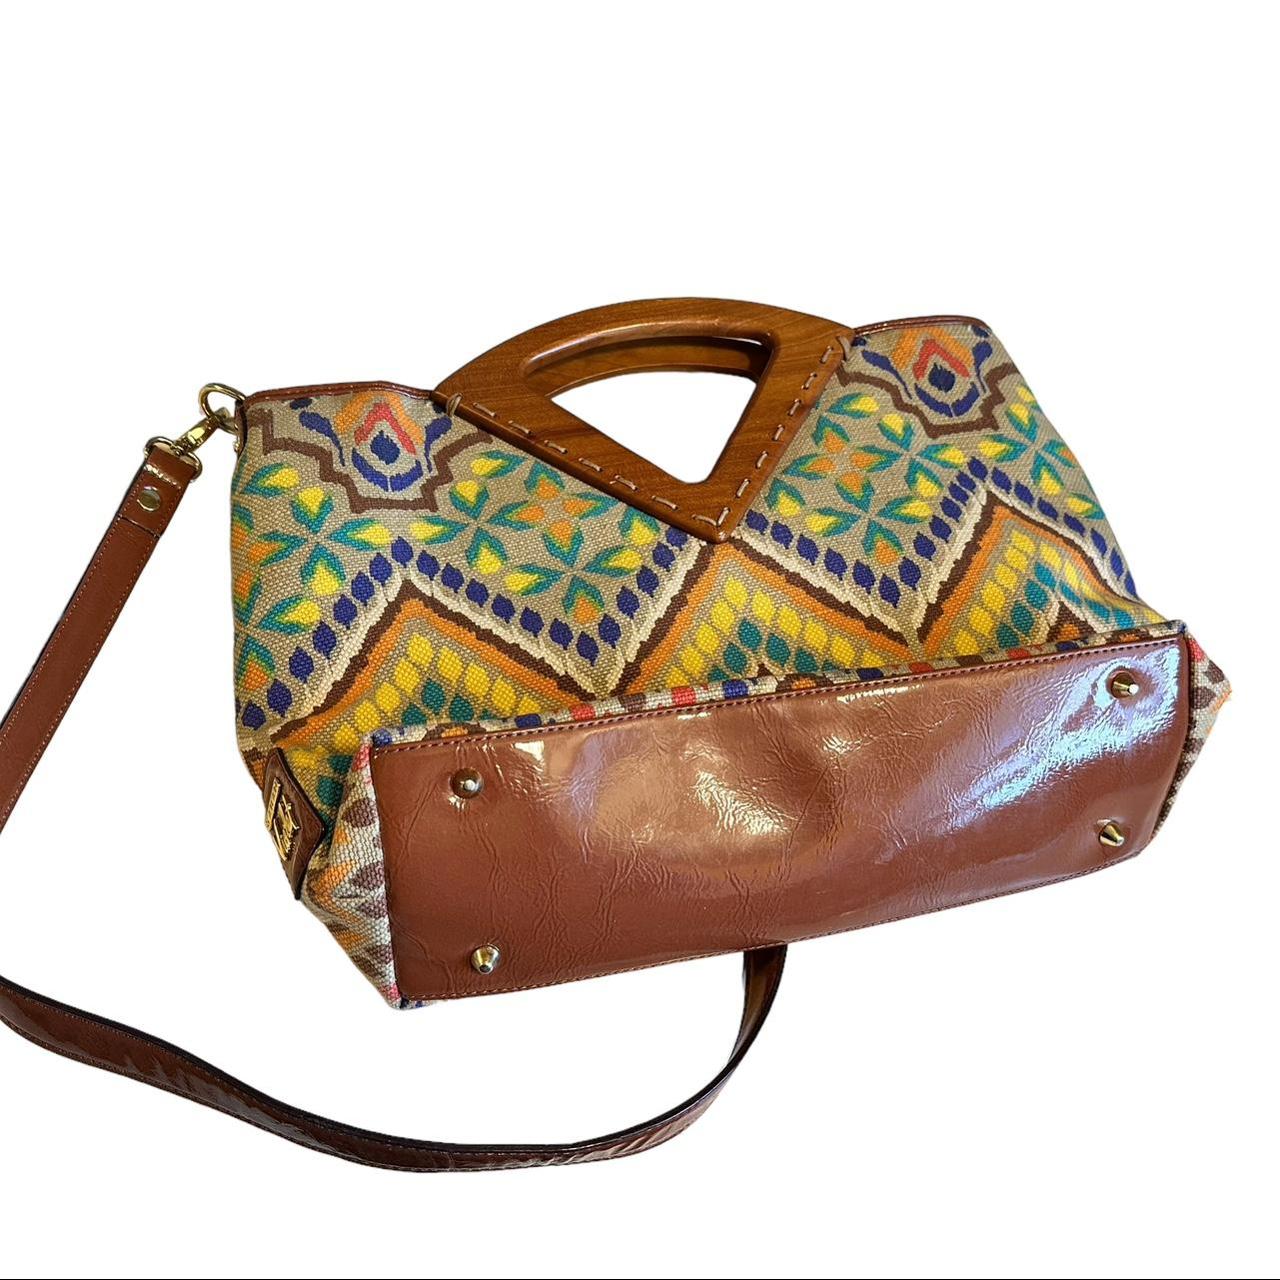 Sarah Violet - little clutch purse or makeup bag for Sale in Phoenix, AZ -  OfferUp